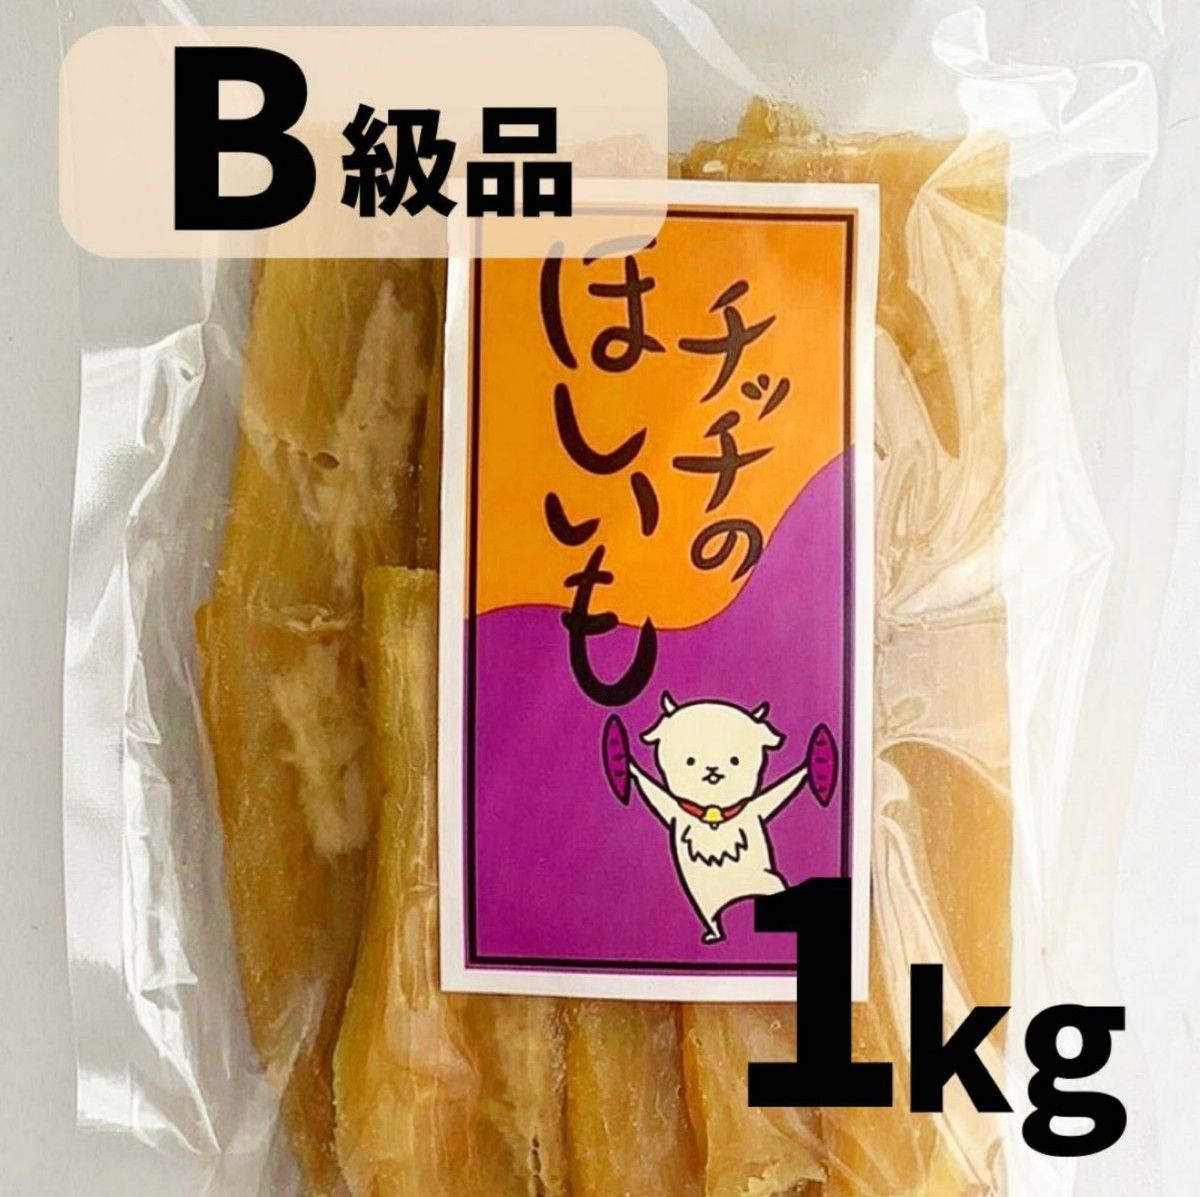 茨城県産紅はるか 干し芋(B級品)1kg 【特別価格】